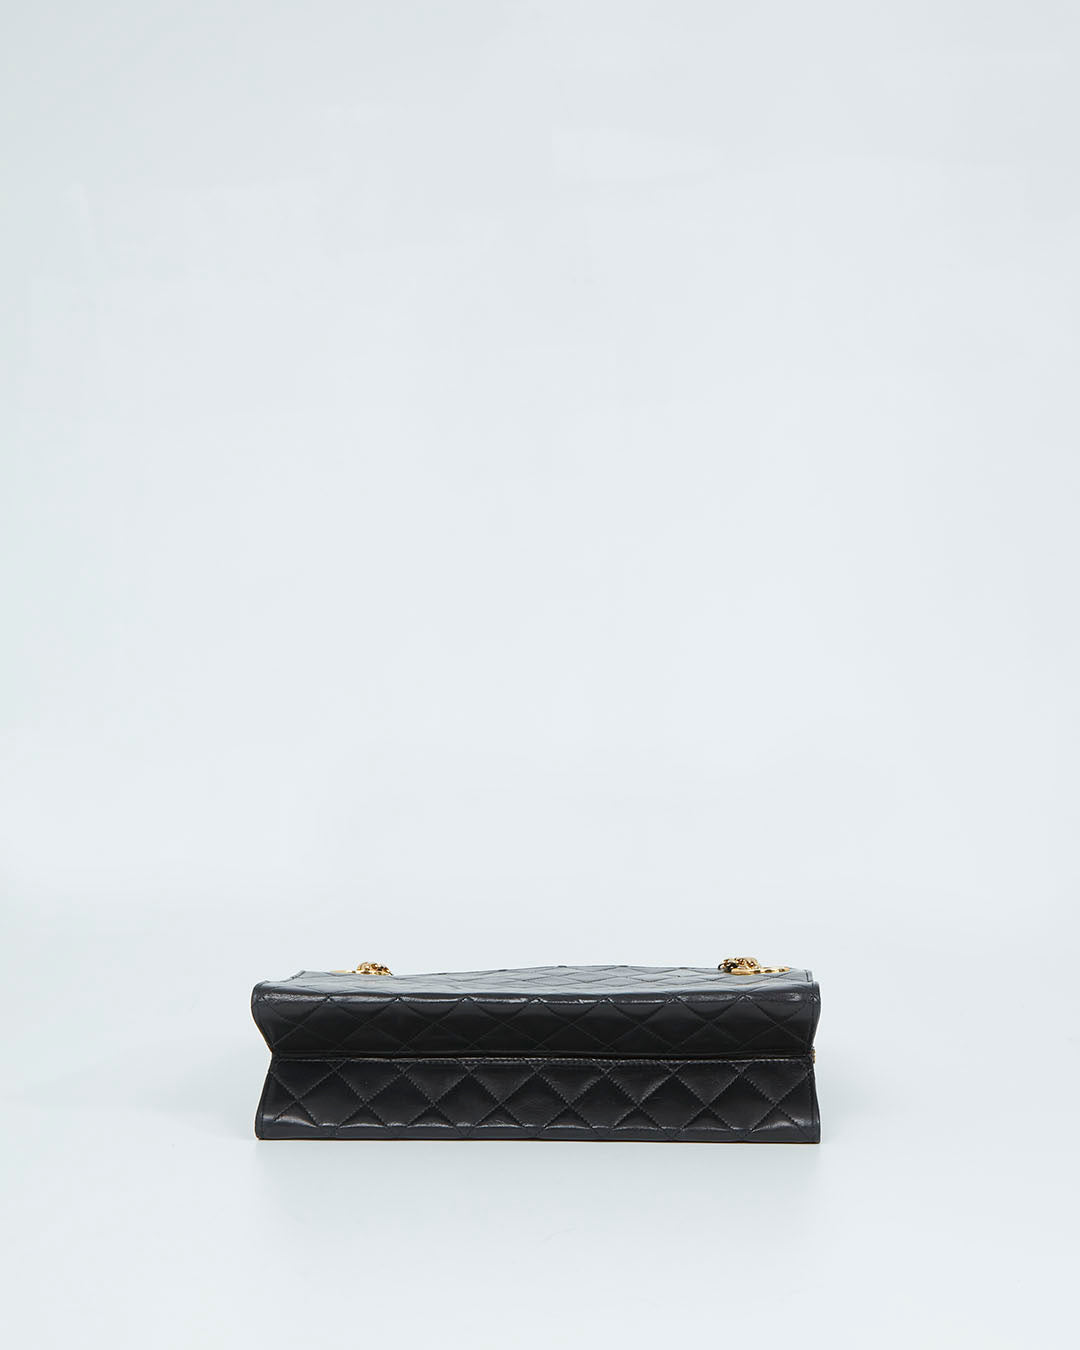 Chanel Vintage Black Lambskin CC Chain Shoulder Bag